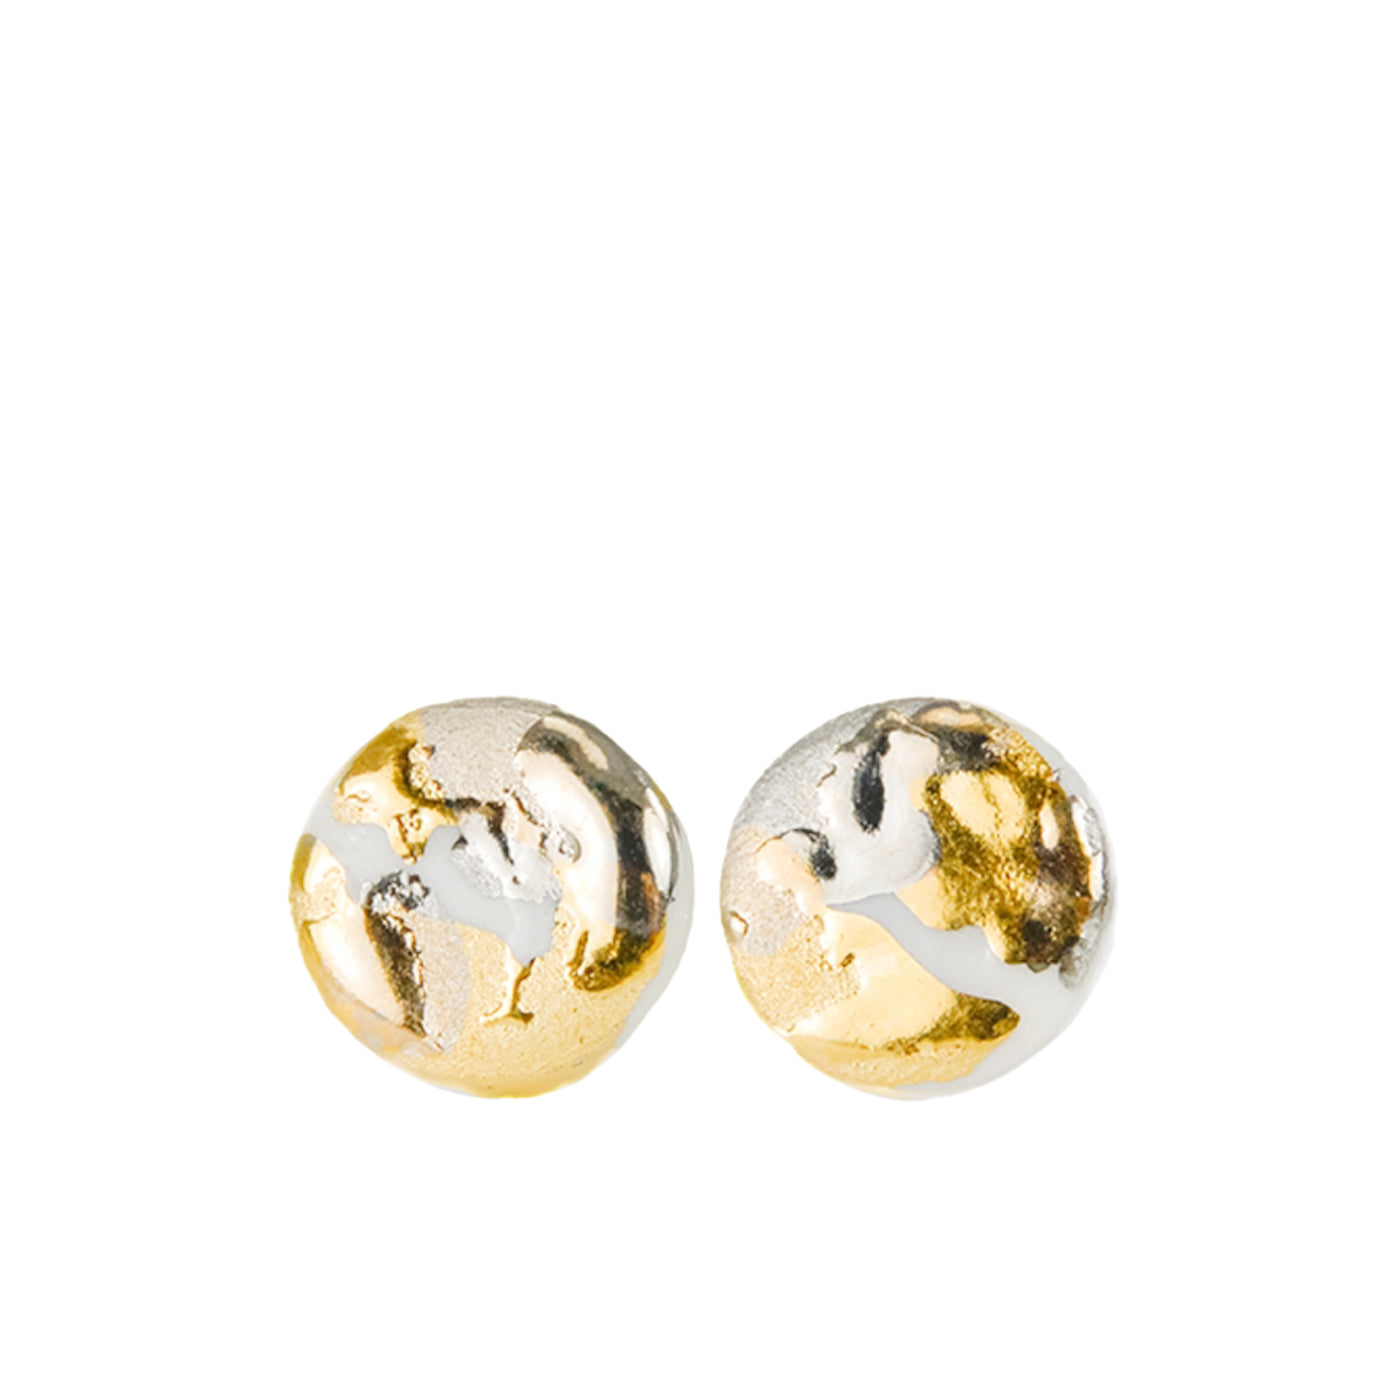 "Leola" porcelain earrings